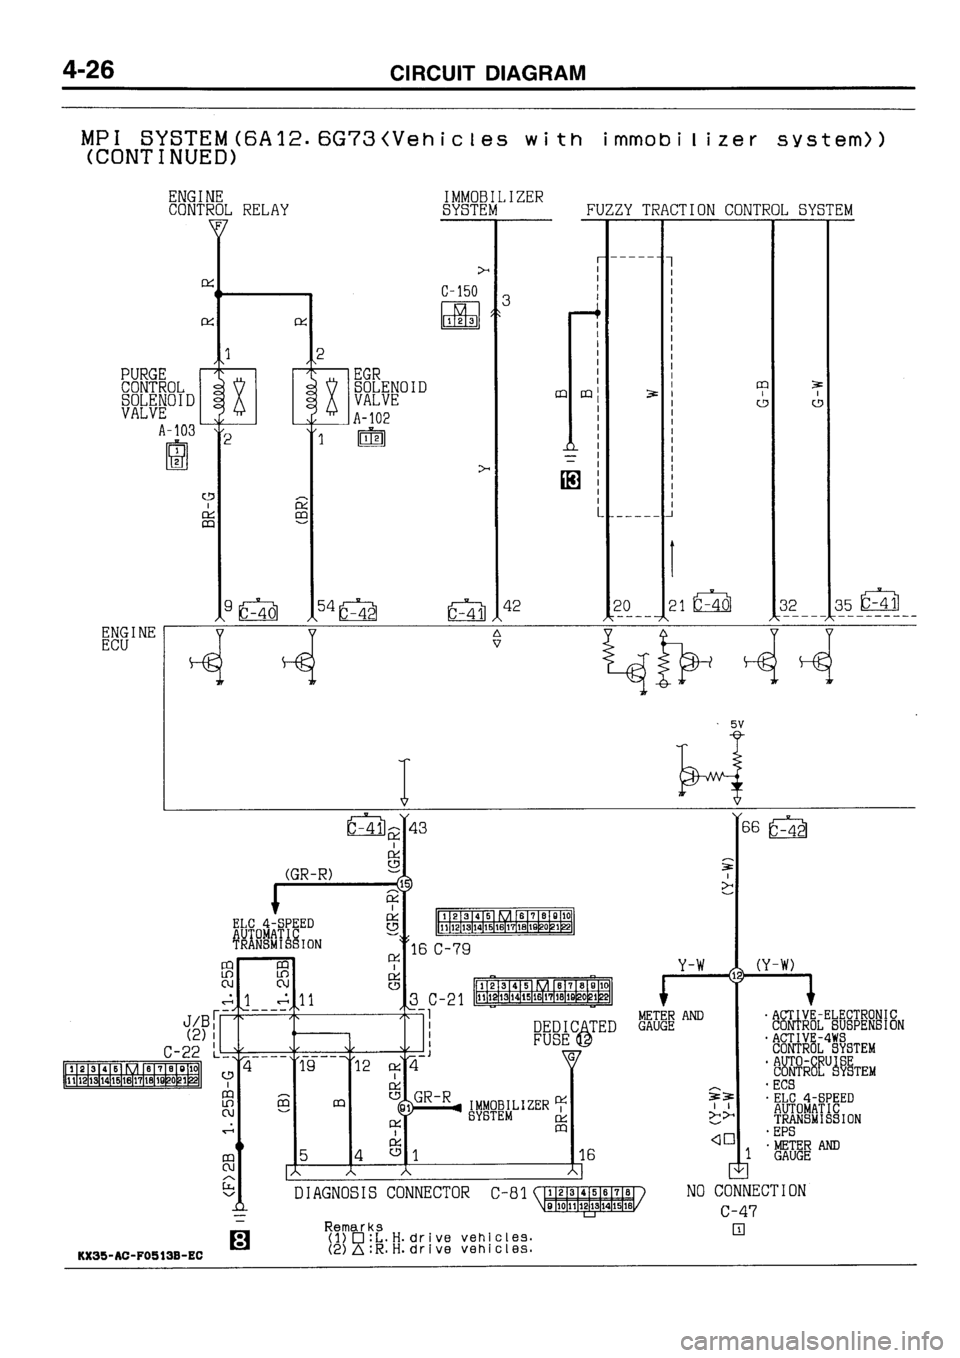 MITSUBISHI GALANT 1996 7.G Electrical Wiring Diagram Repair Manual 